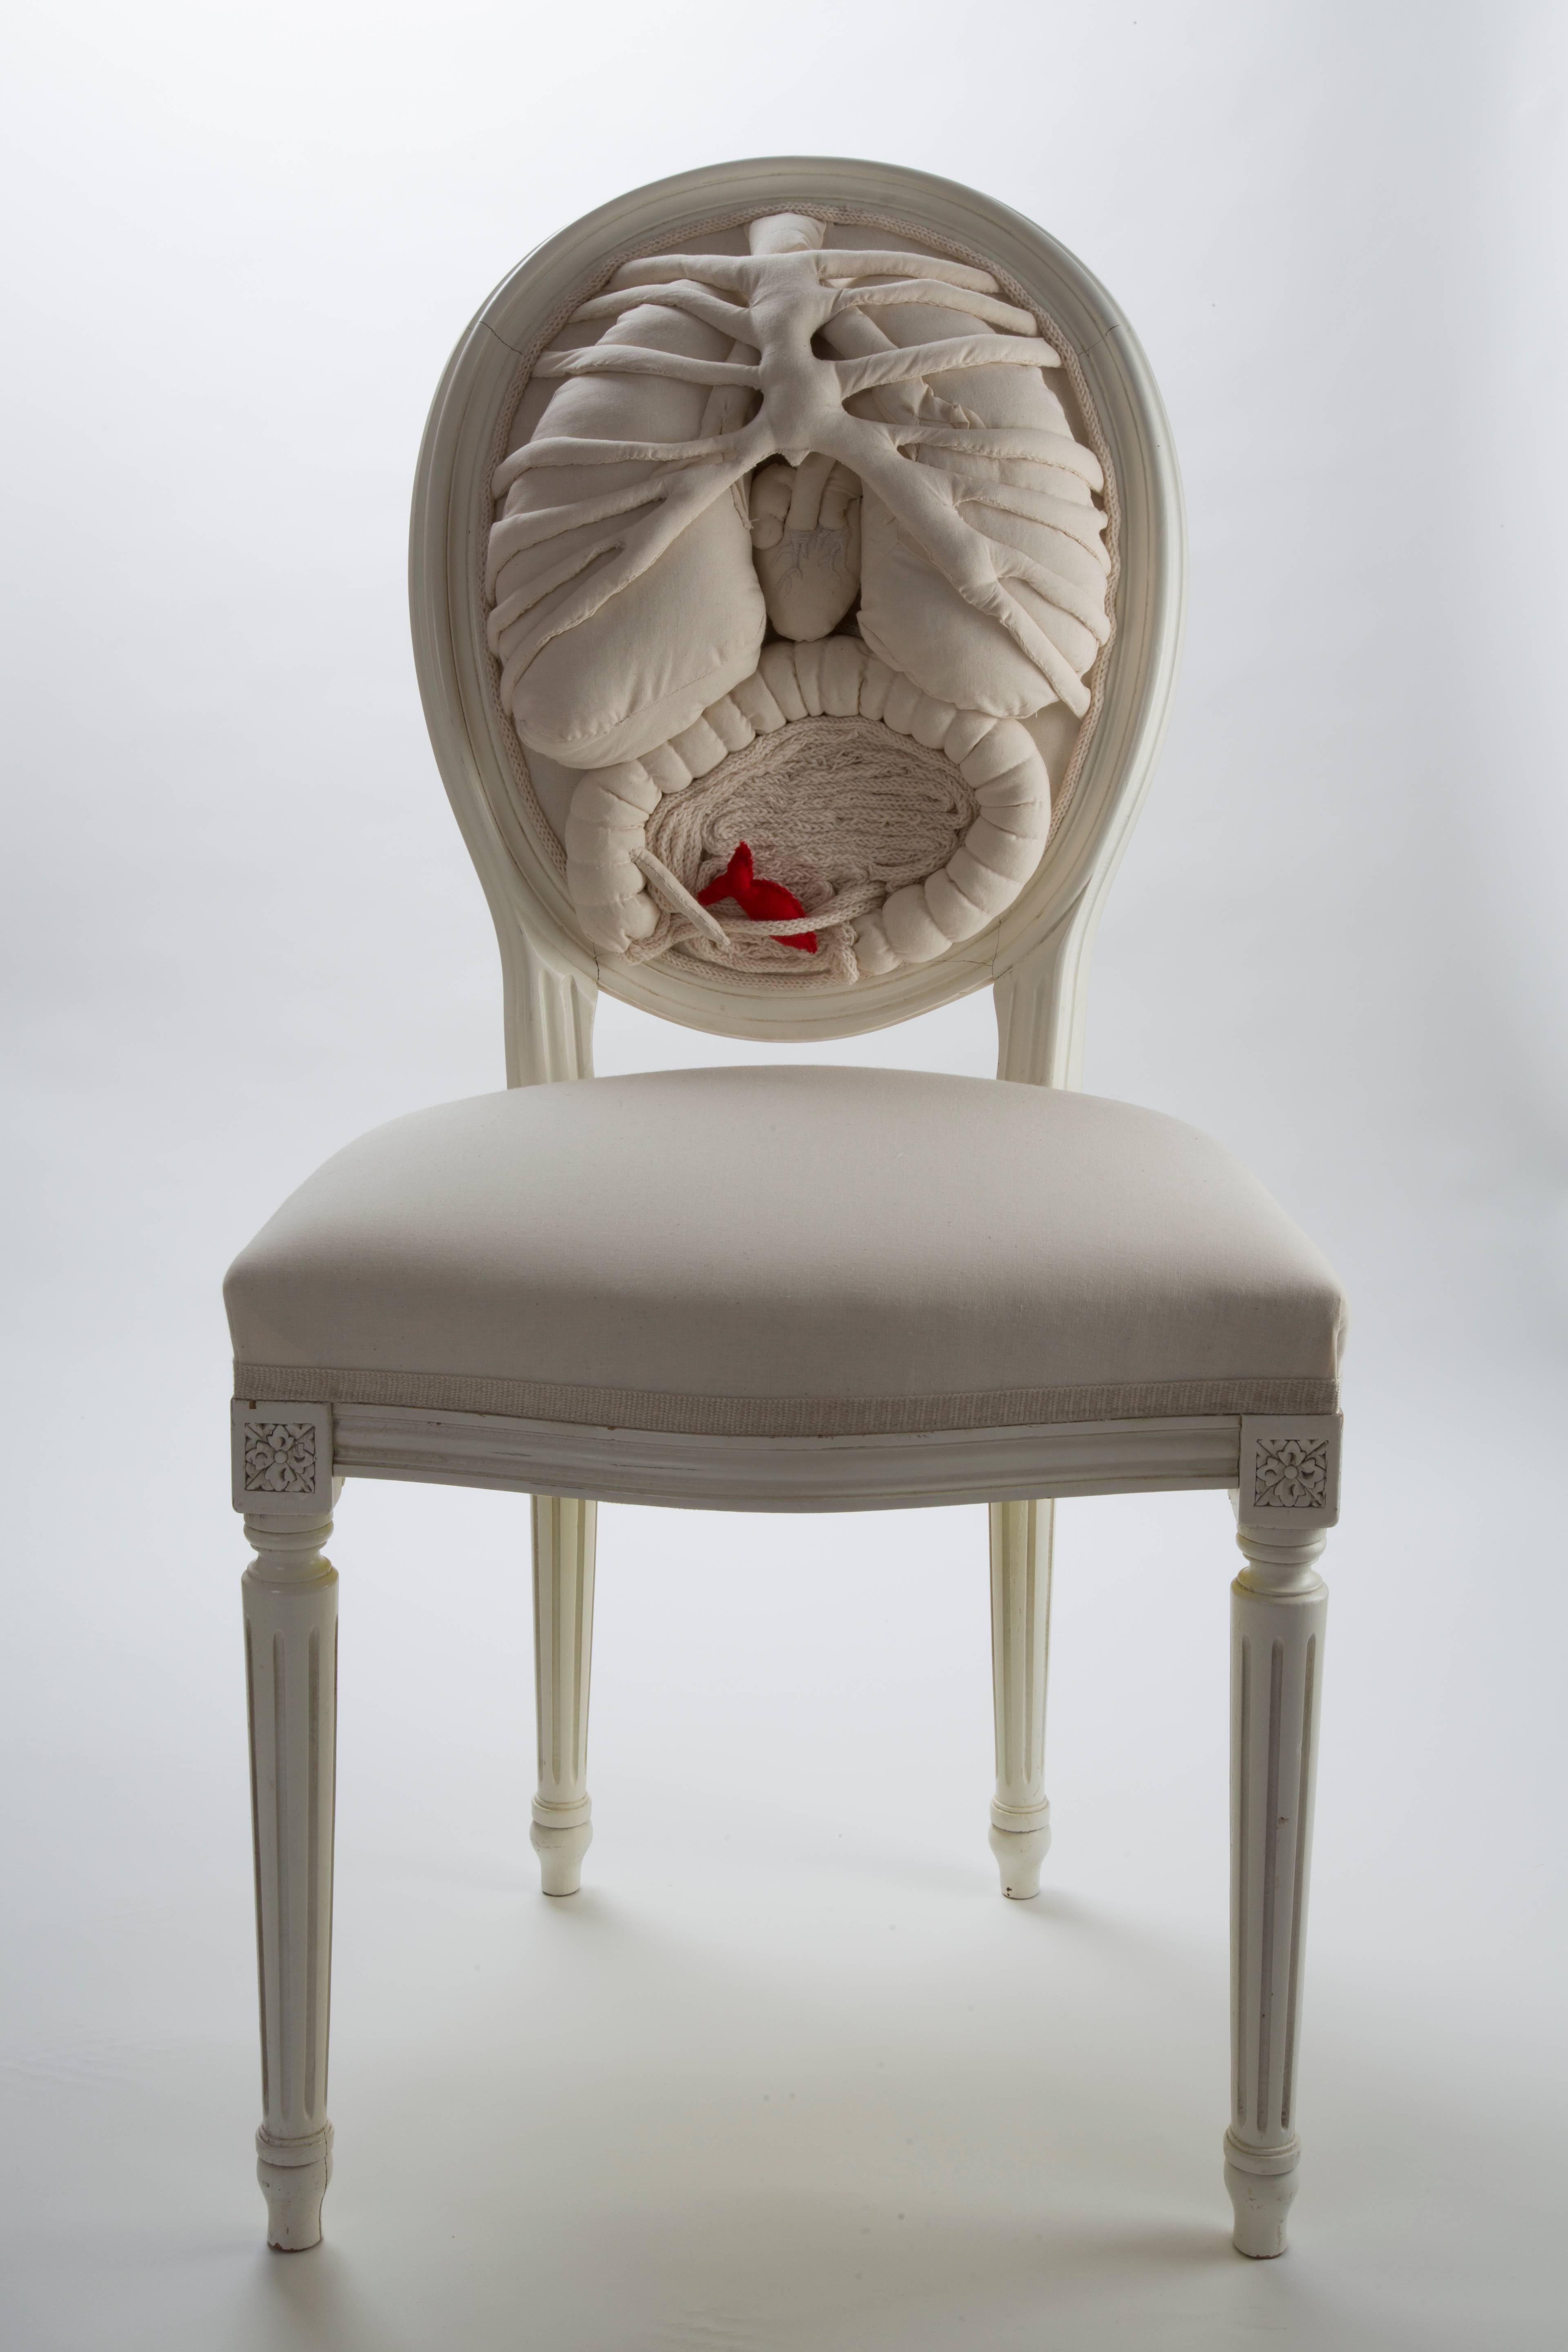 Unglaubliche ein von einer Art weißen Stuhl Anatomie
von einem französischen Künstler.
Handgefertigt in einem weißen Louis XVI-Stil Stuhl aus Buchenholz bestickt.
Diese Kunstwerke sind voller Poesie, versteckter Botschaften und Kreativität.